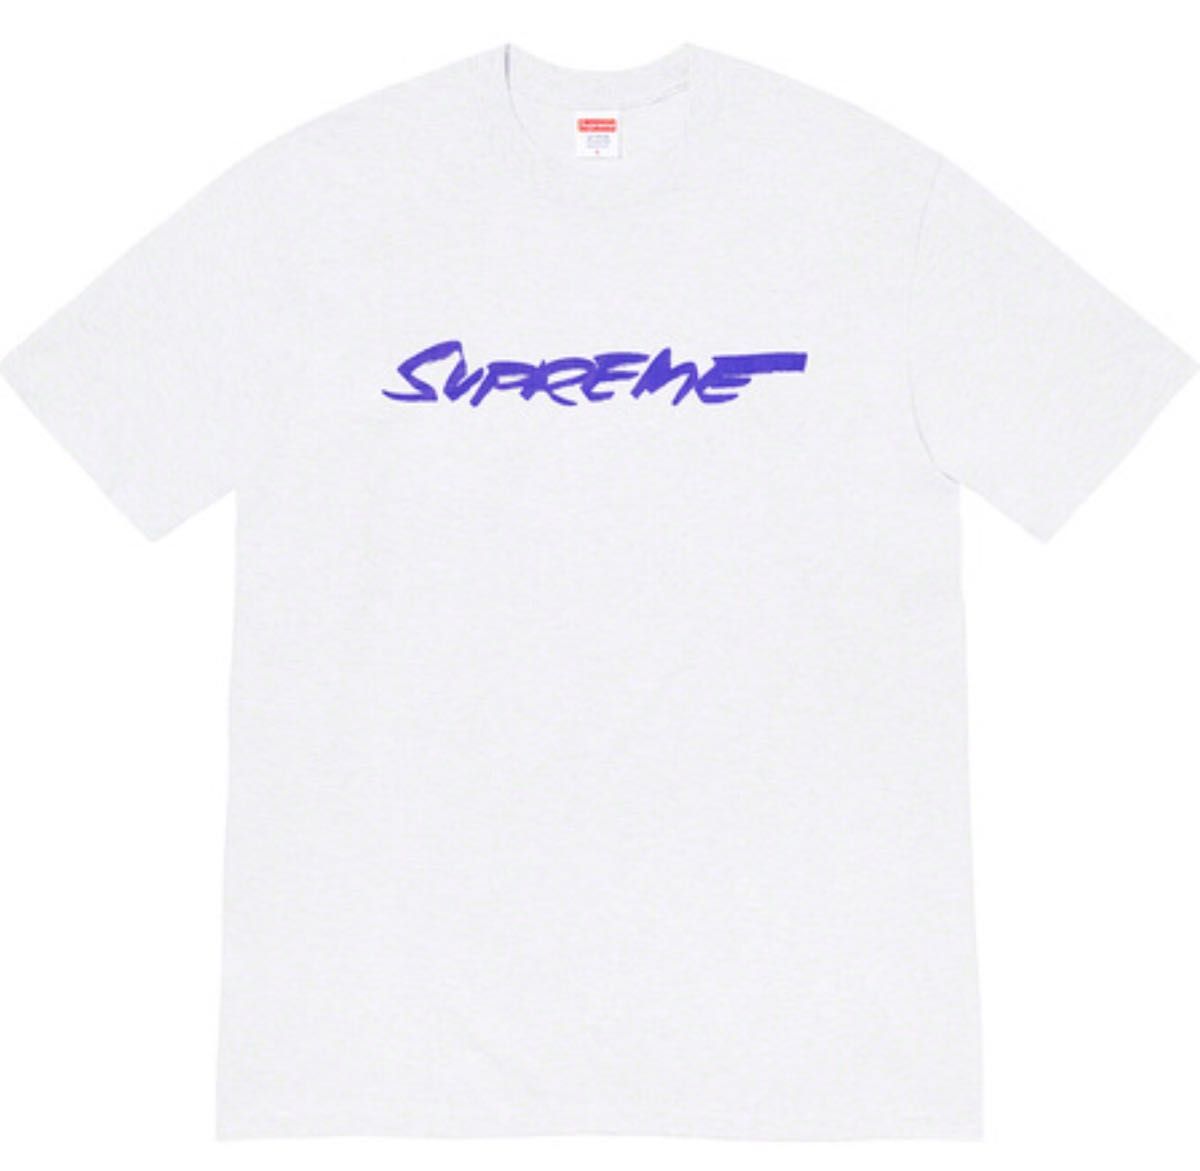 【新品未使用】 Supreme  futura logo tee フューチュラ  ロゴ Tシャツ グレー 灰 Lサイズ  